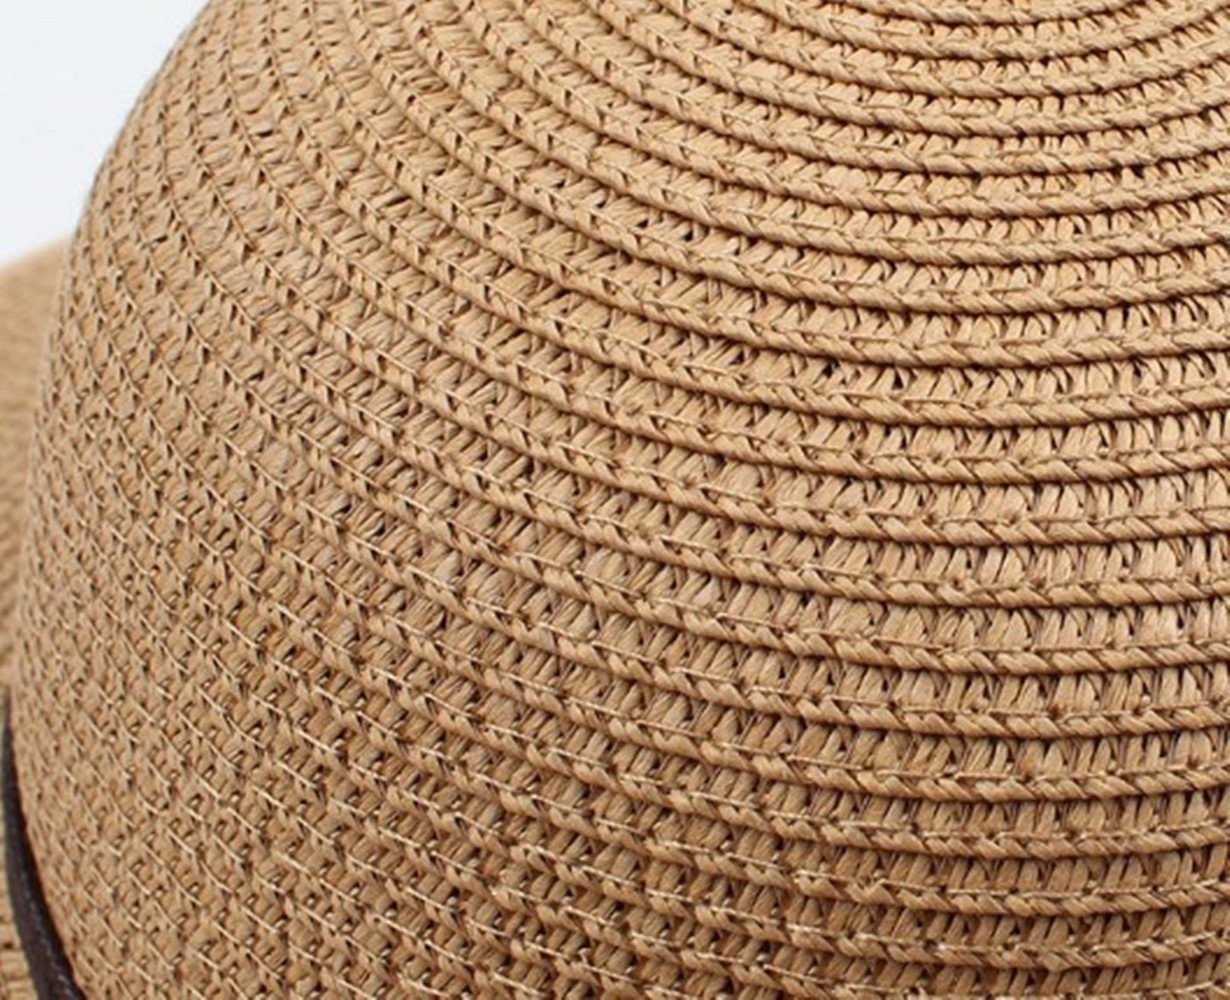 Faltbarer,Strandmütze XDeer Sonnenhut und Damen Sonnenhut Schleife Strohhut mit Zierband loppy beige Sonnenhüte,Sonnenhut